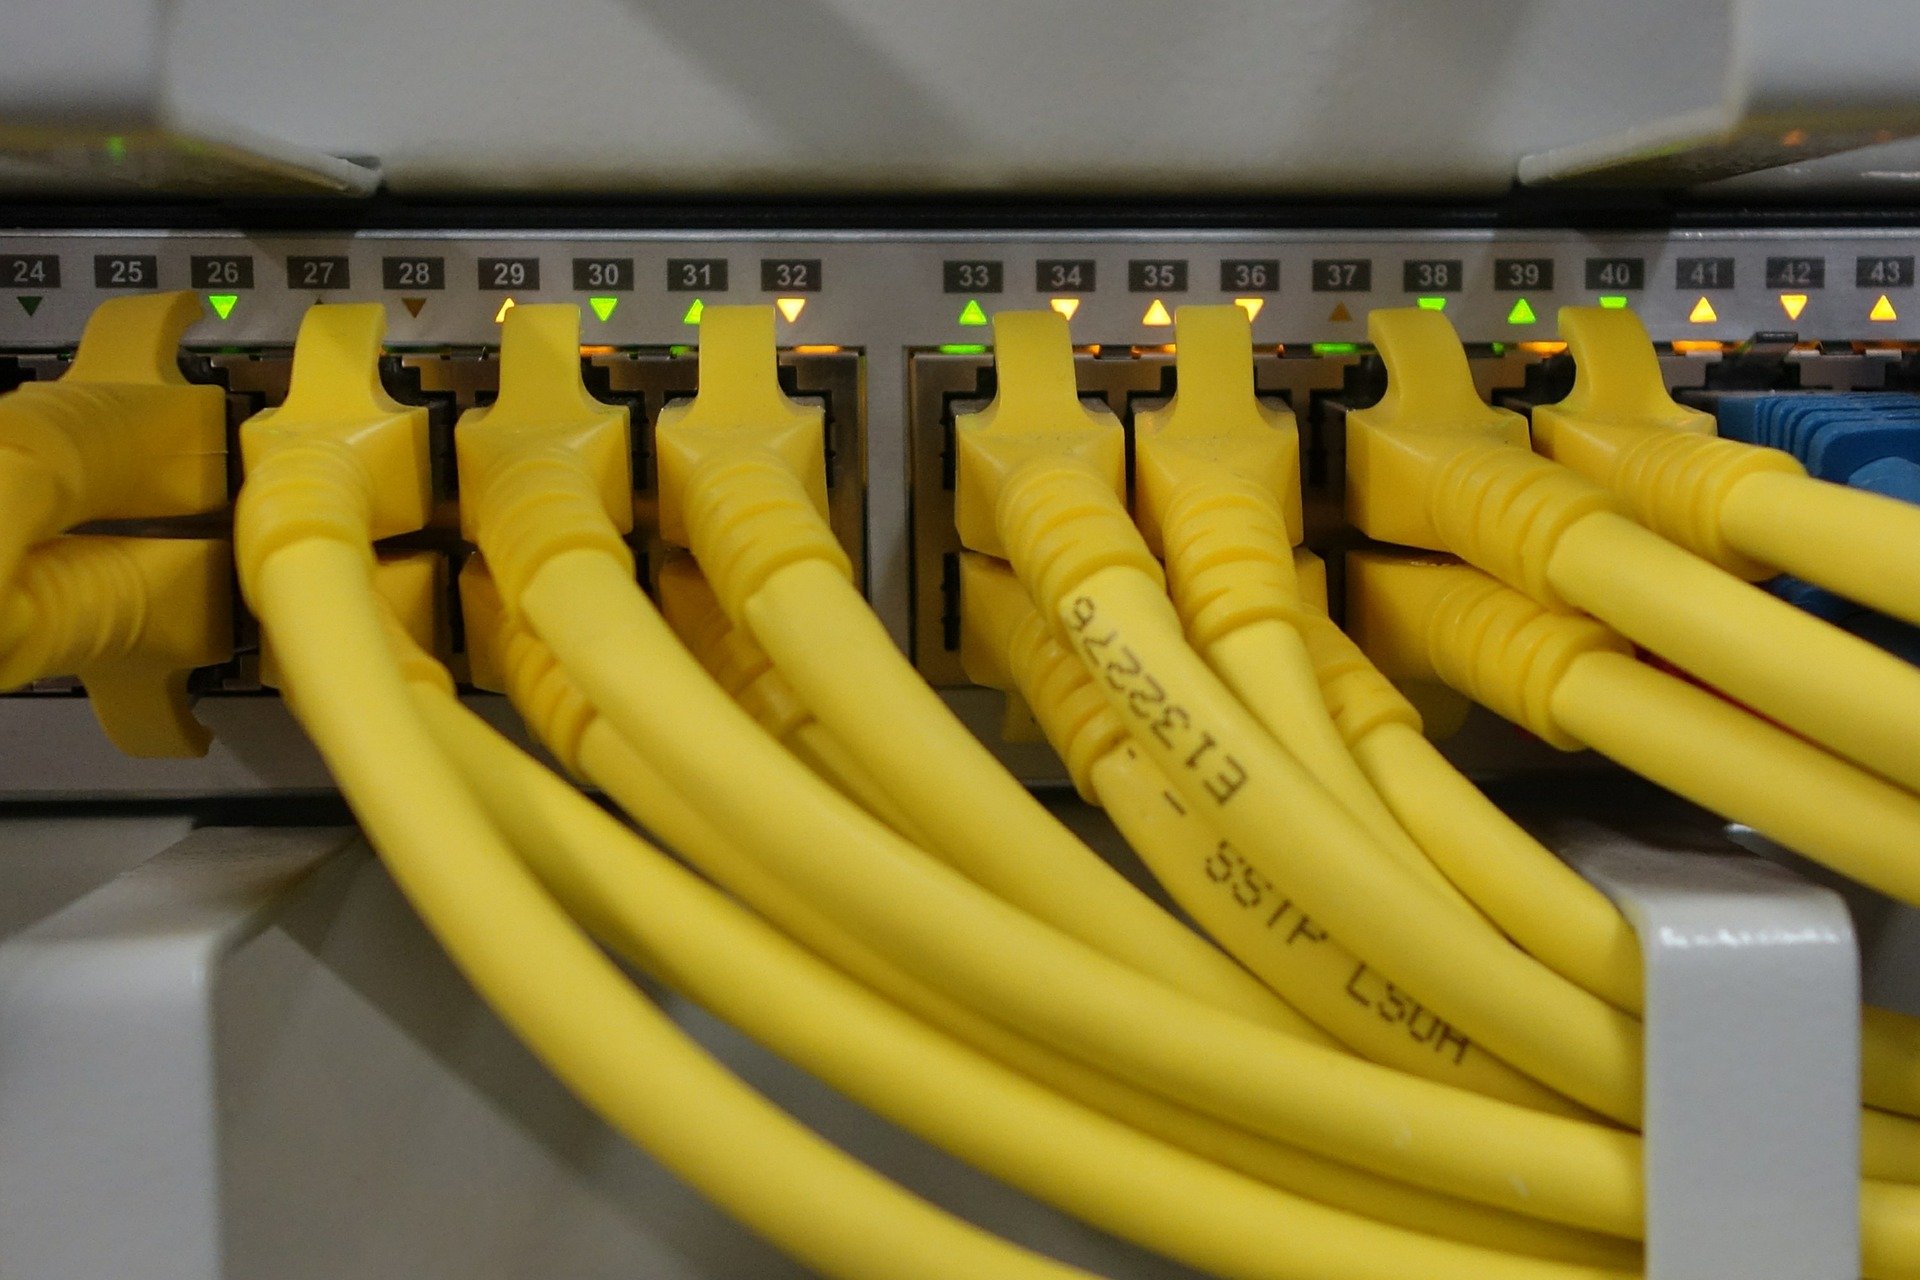 Cable de red Ethernet: categorías, protecciones y cómo saber cuál